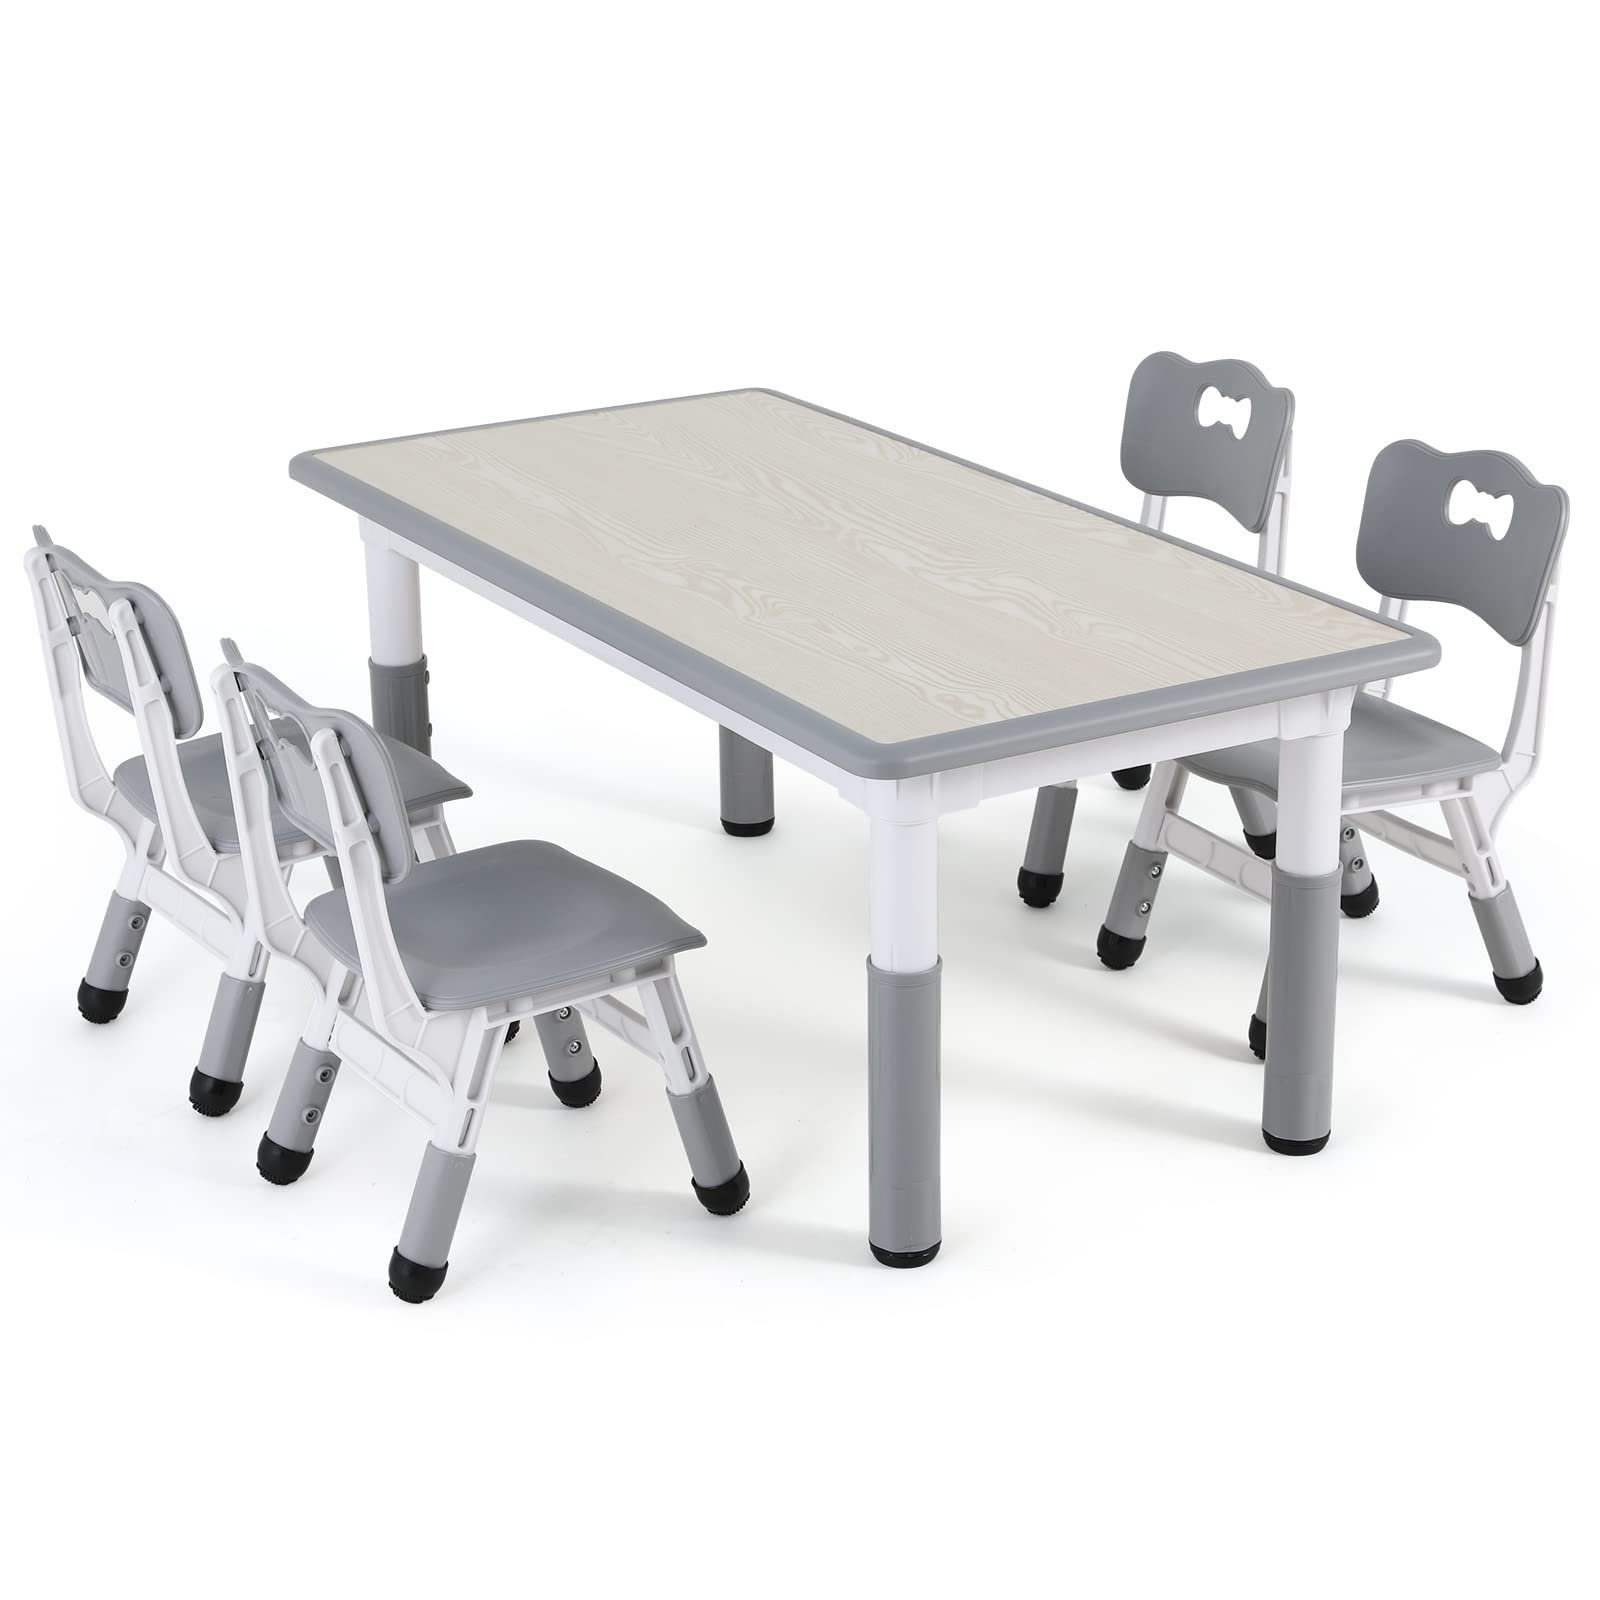 TLGREEN Kindersitzgruppe Kindertisch mit 4 Stühlen, Детская мебель, Quadratischen Tisch Höhenverstellbar Plastik